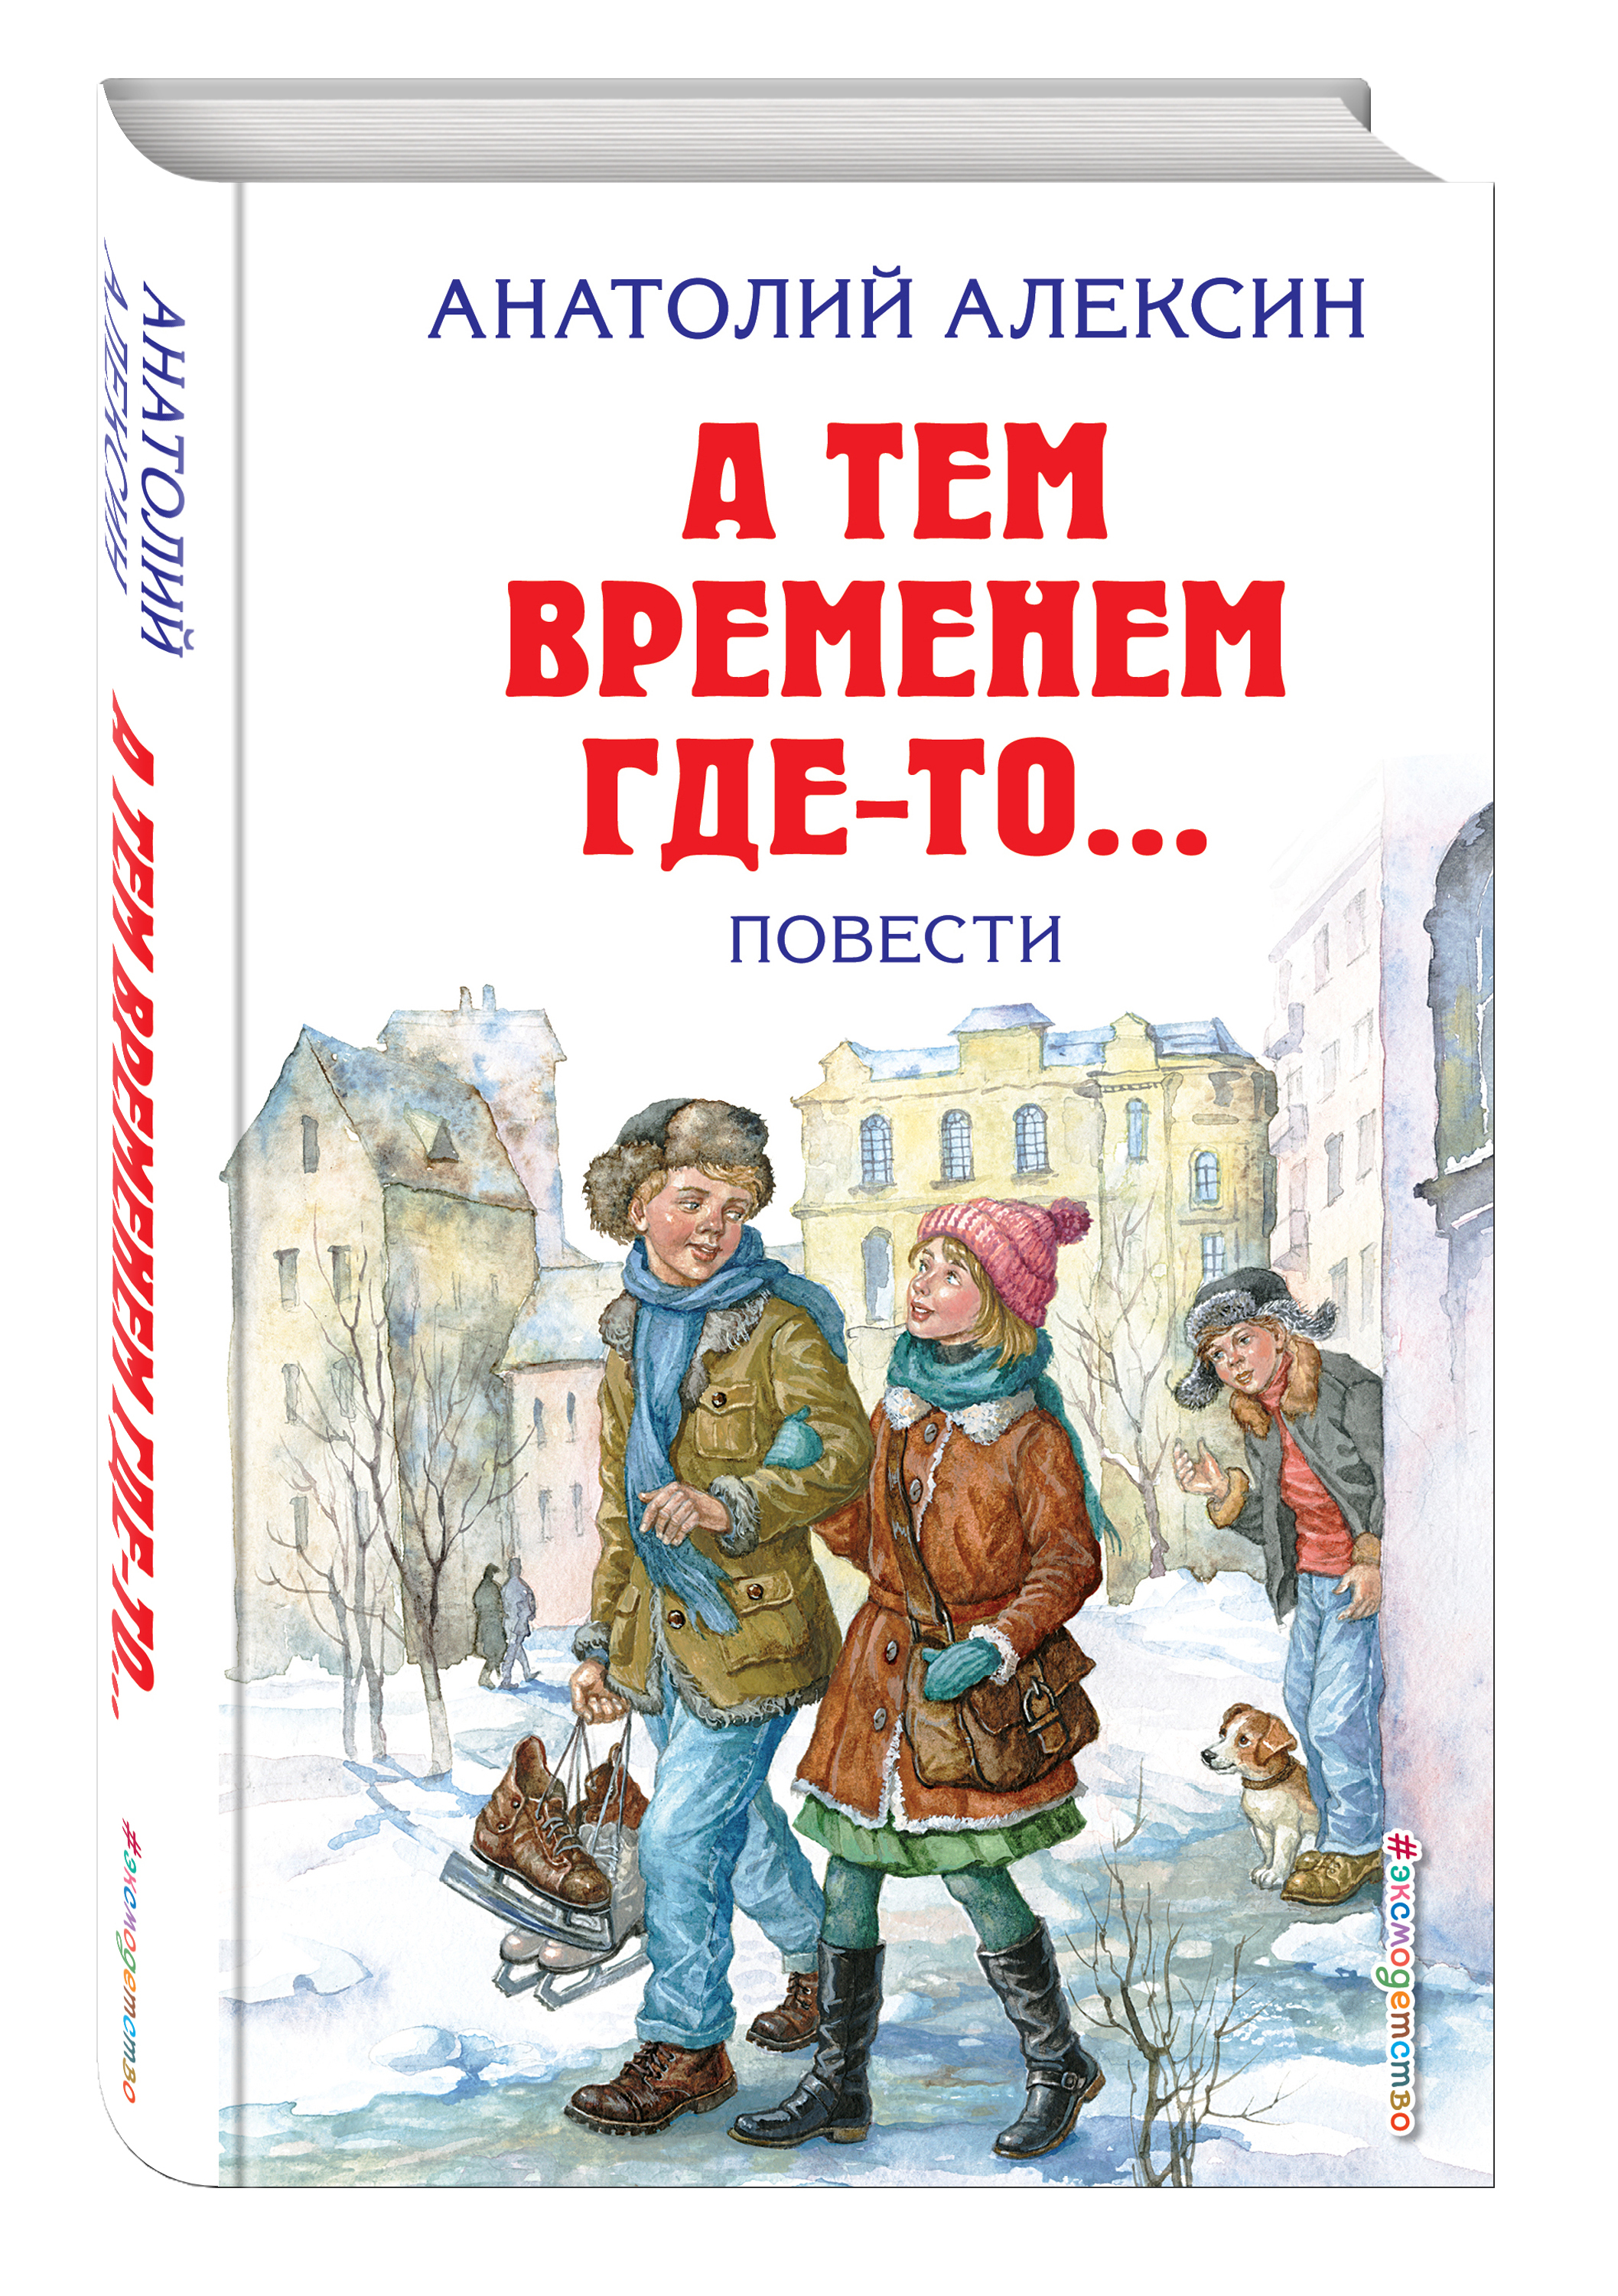 Книги Алексина для детей